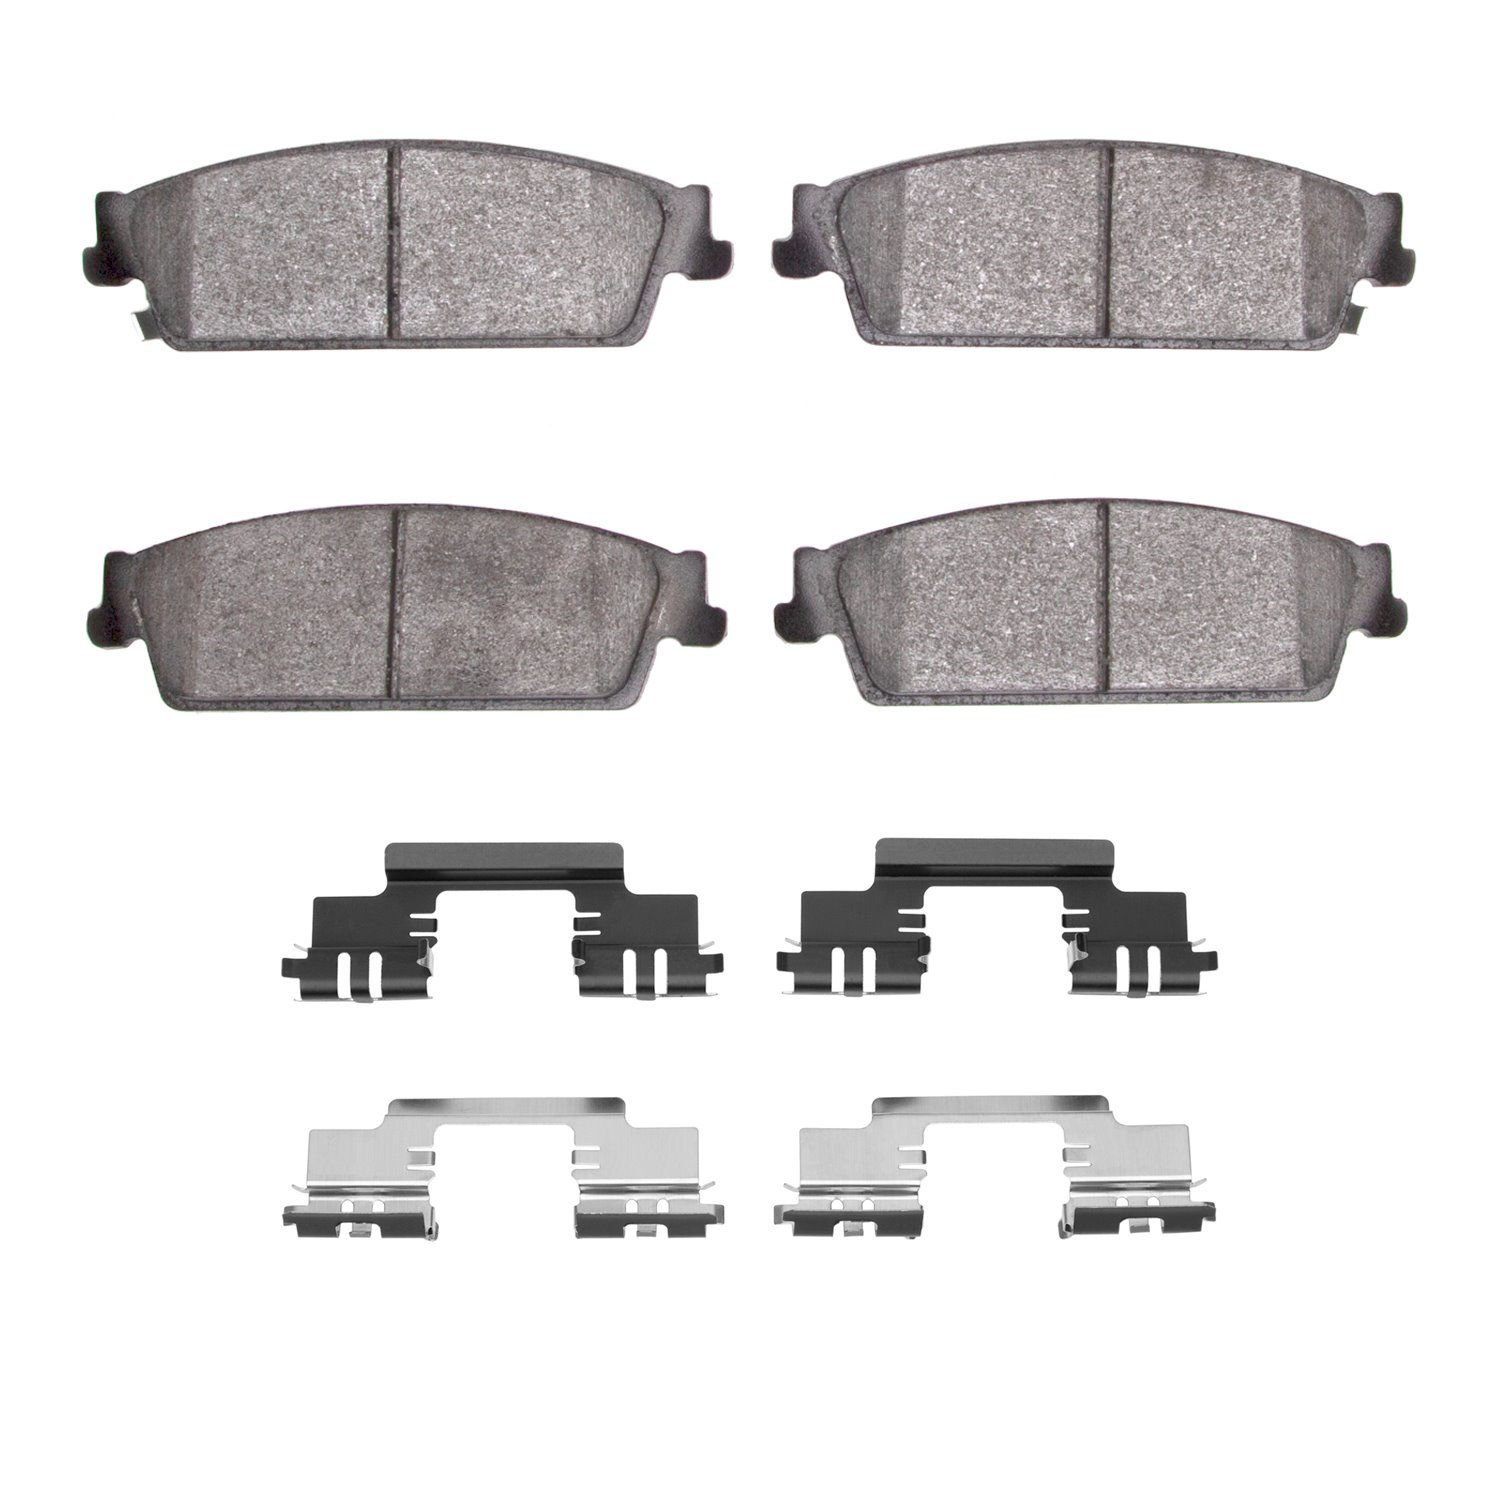 1311-1194-01 3000-Series Semi-Metallic Brake Pads & Hardware Kit, 2007-2014 GM, Position: Rear